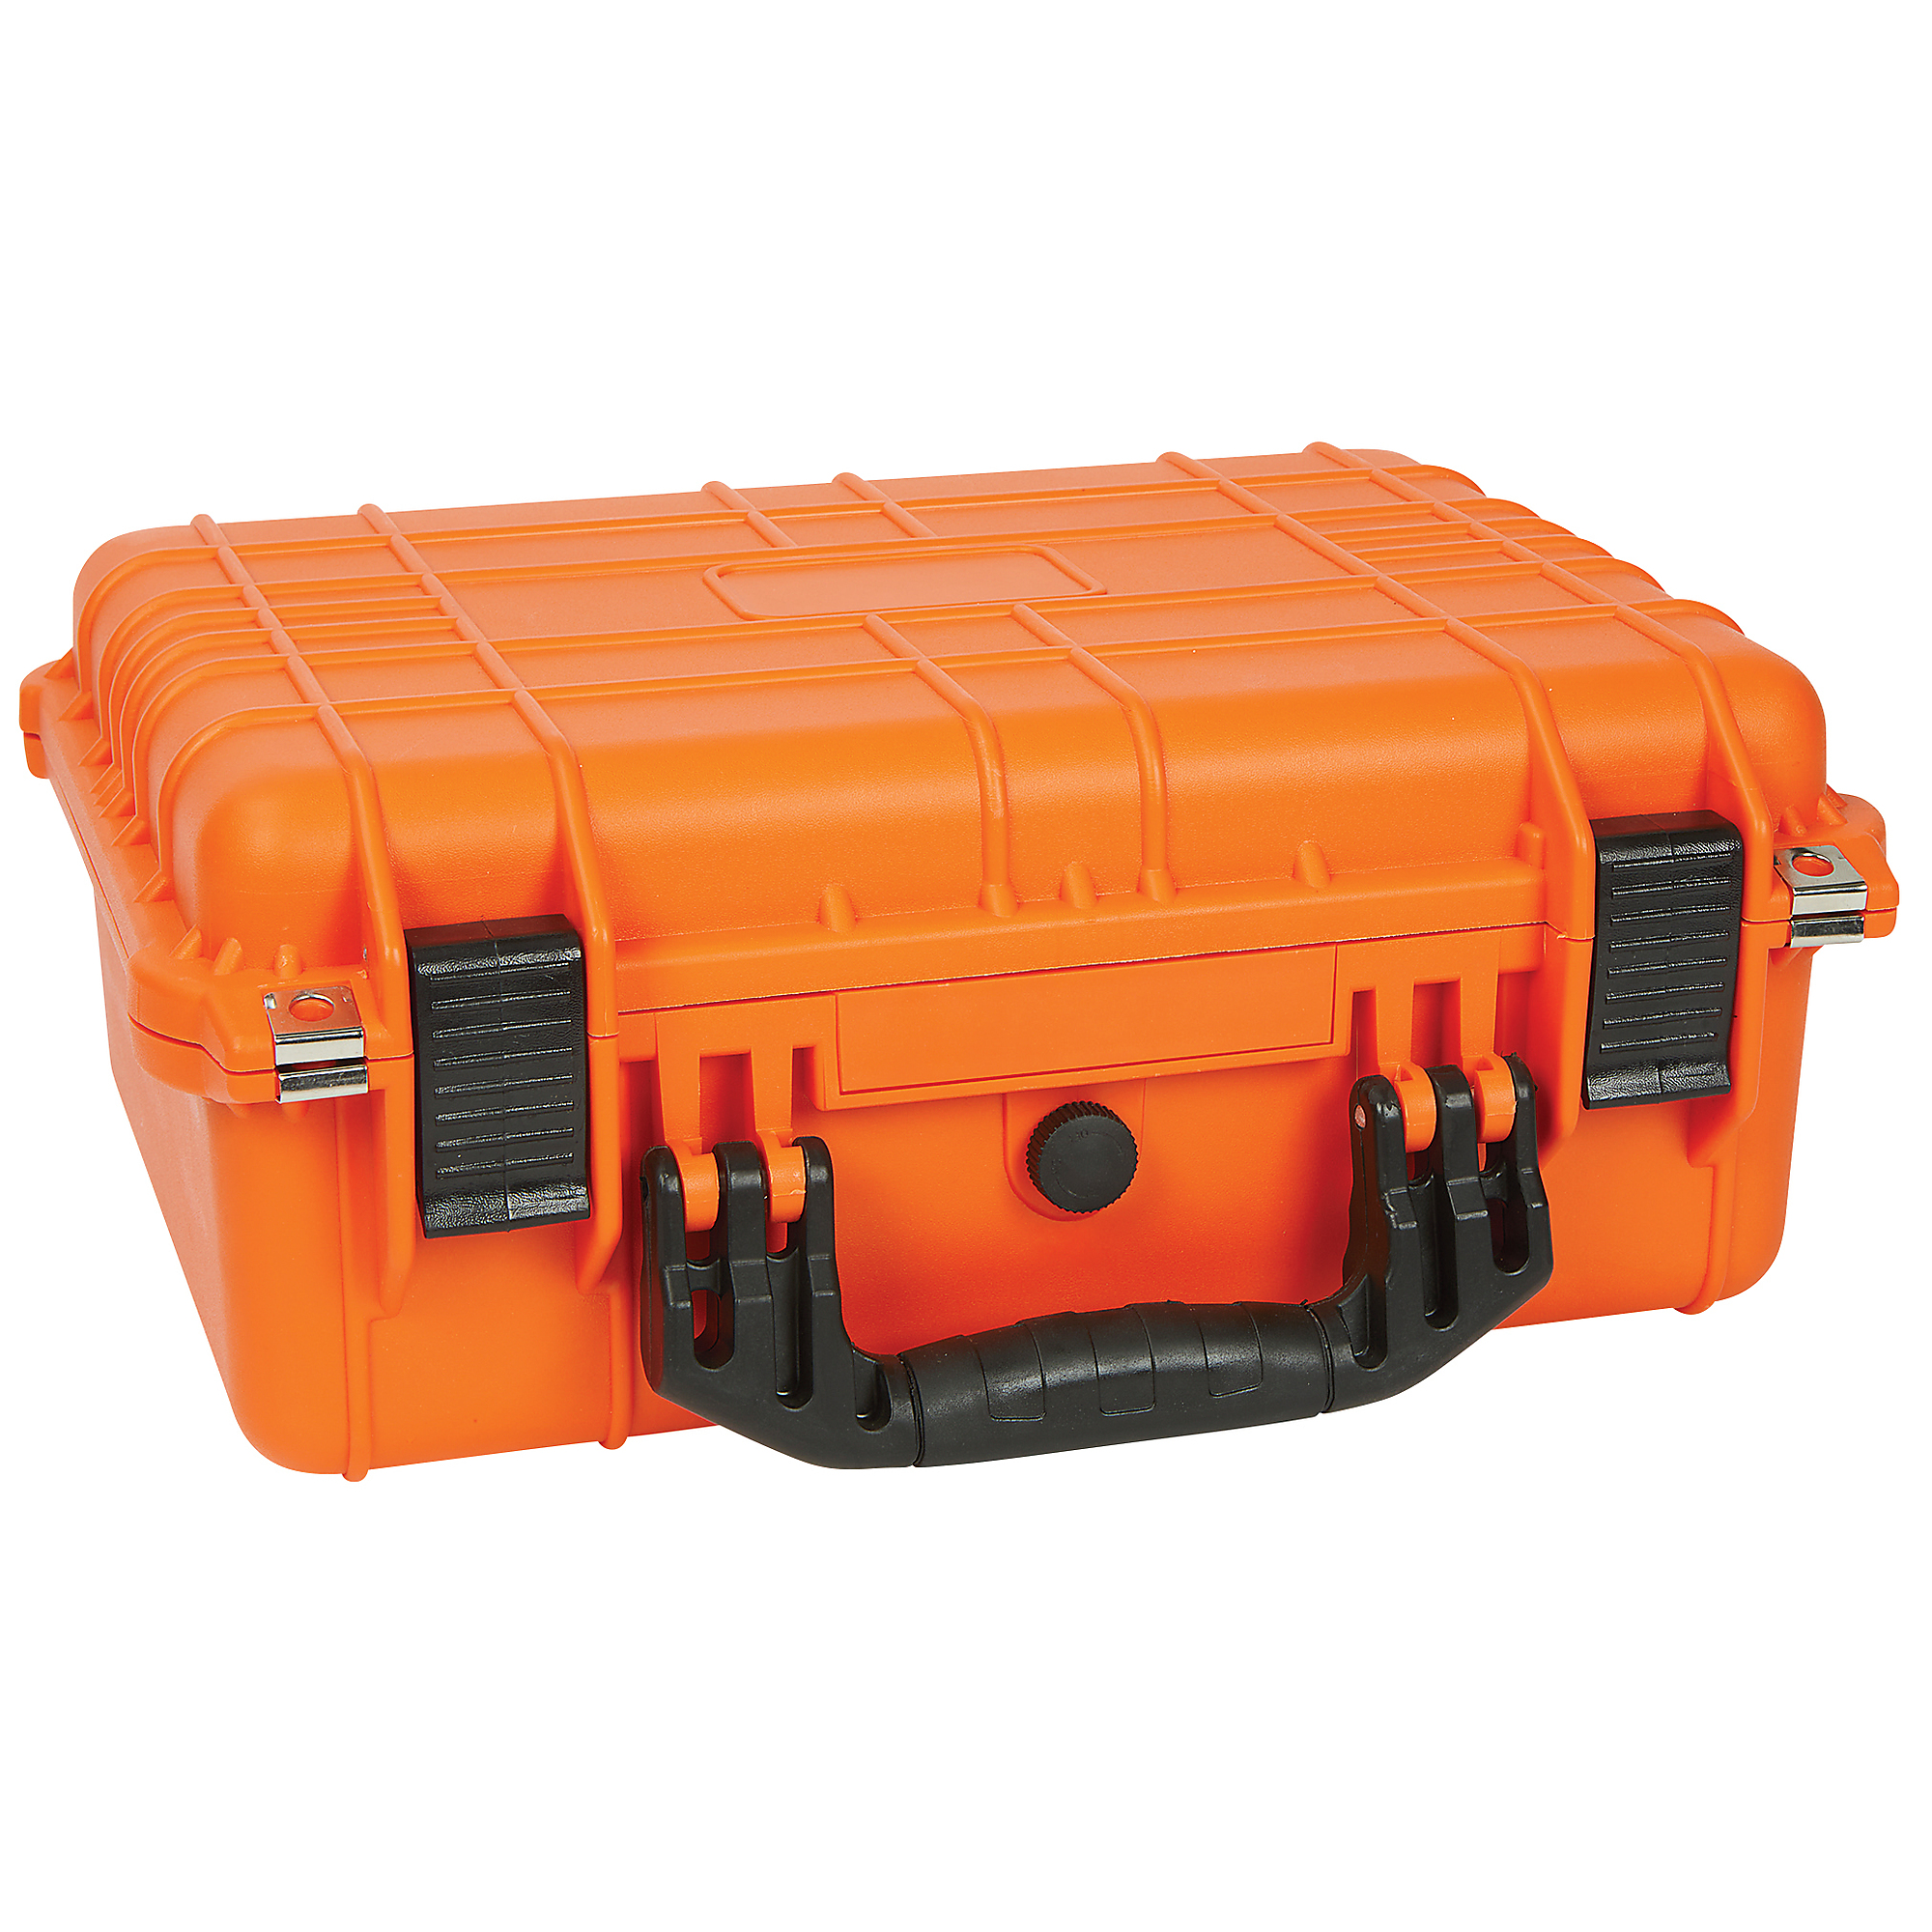 Strongway 16in. Plastic Waterproof Storage Case, Orange, Model# MJ-5018_ORG